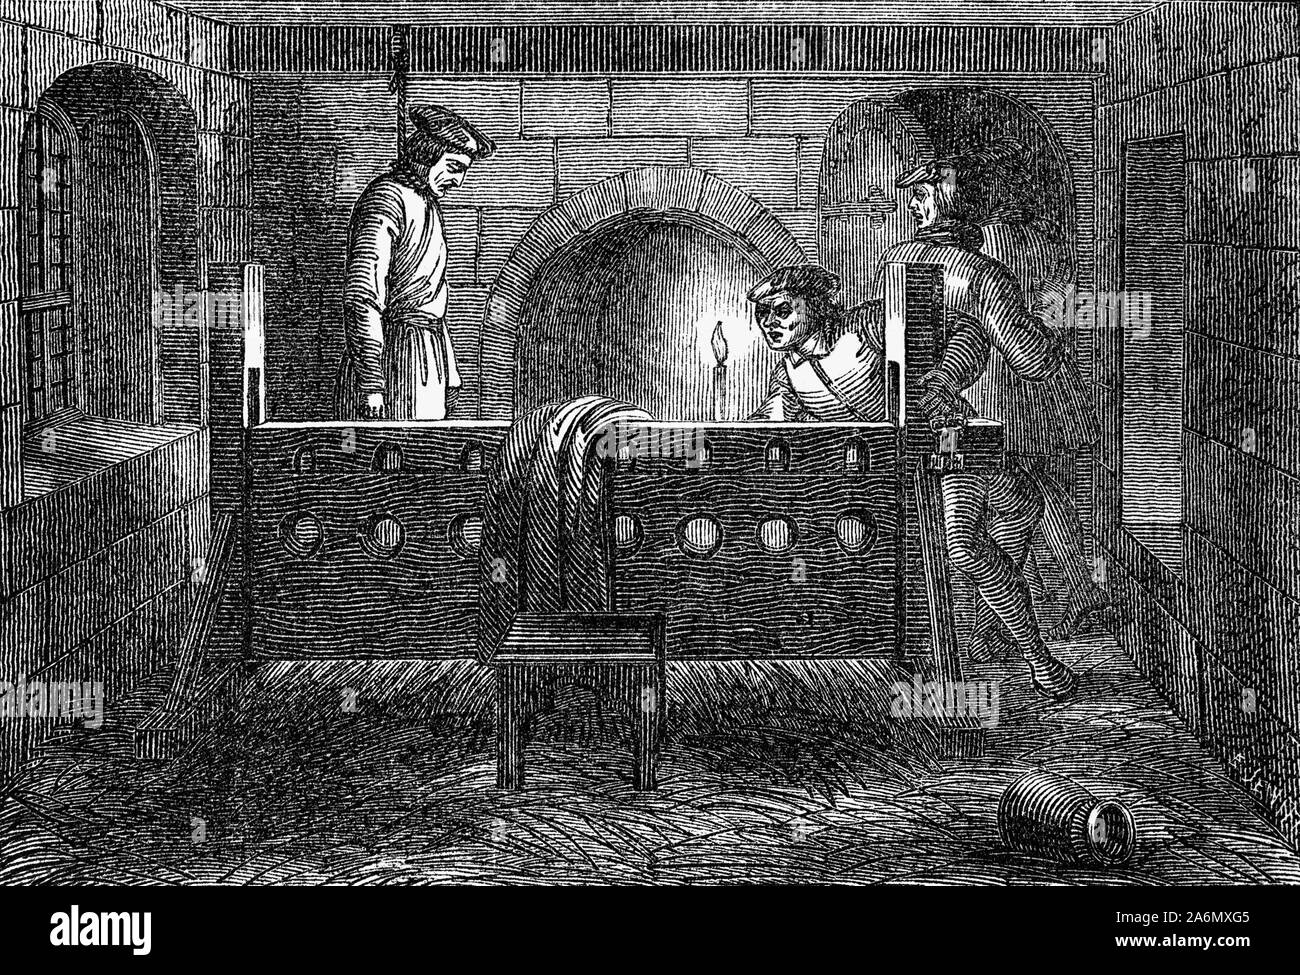 Richard Hunne était un marchand anglais tailleur dans la ville de Londres pendant les premières années du règne d'Henry VIII. Après une dispute avec son prêtre au cours des funérailles de son fils, a cherché à utiliser la hunne English tribunaux de droit commun de contester l'autorité de l'église. En réponse, les représentants de l'église l'a arrêté pour le procès dans un tribunal ecclésiastique aux frais de l'hérésie. En décembre 1514, en attendant leur procès, Hunne fut retrouvé mort dans sa cellule, et le meurtre par des officiels de l'église a été suspectée. Sa mort a provoqué la colère généralisée contre le clergé, et les mois des partis politiques et religieux turmoi Banque D'Images